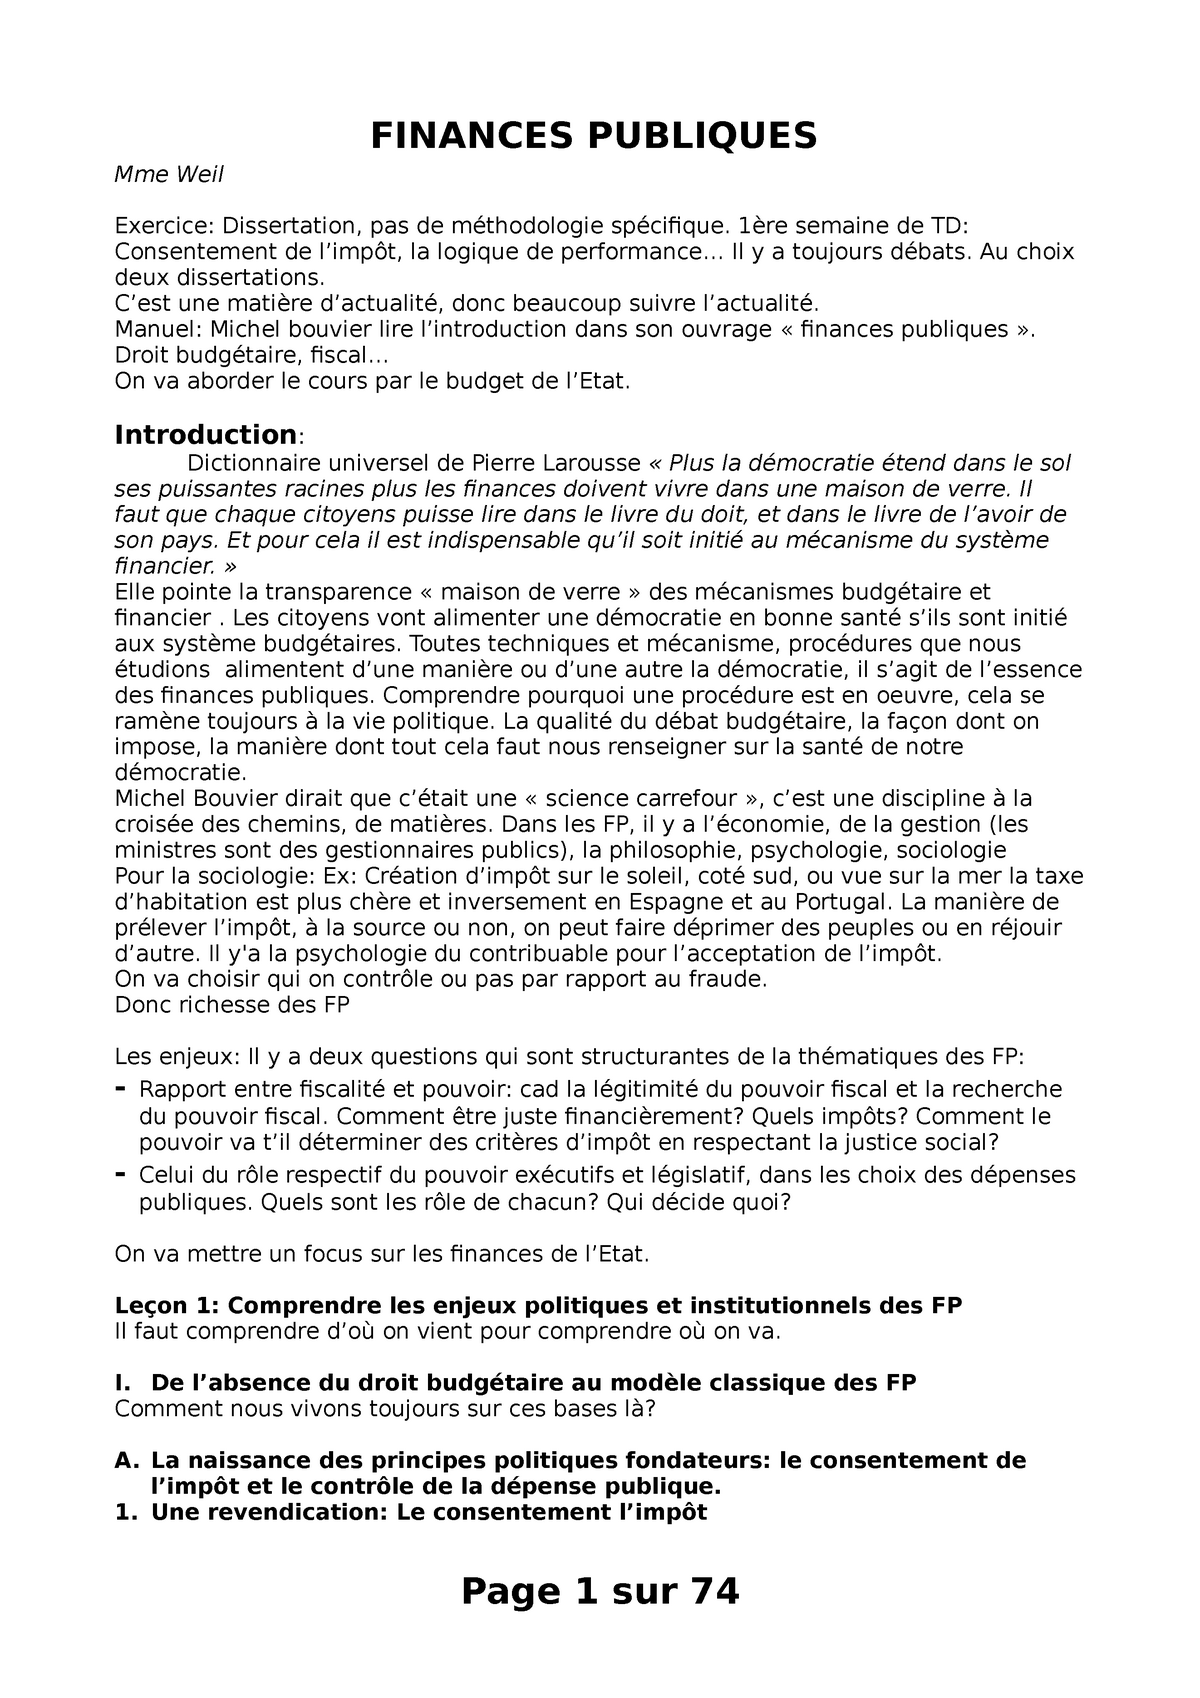 dissertation finances publiques pdf